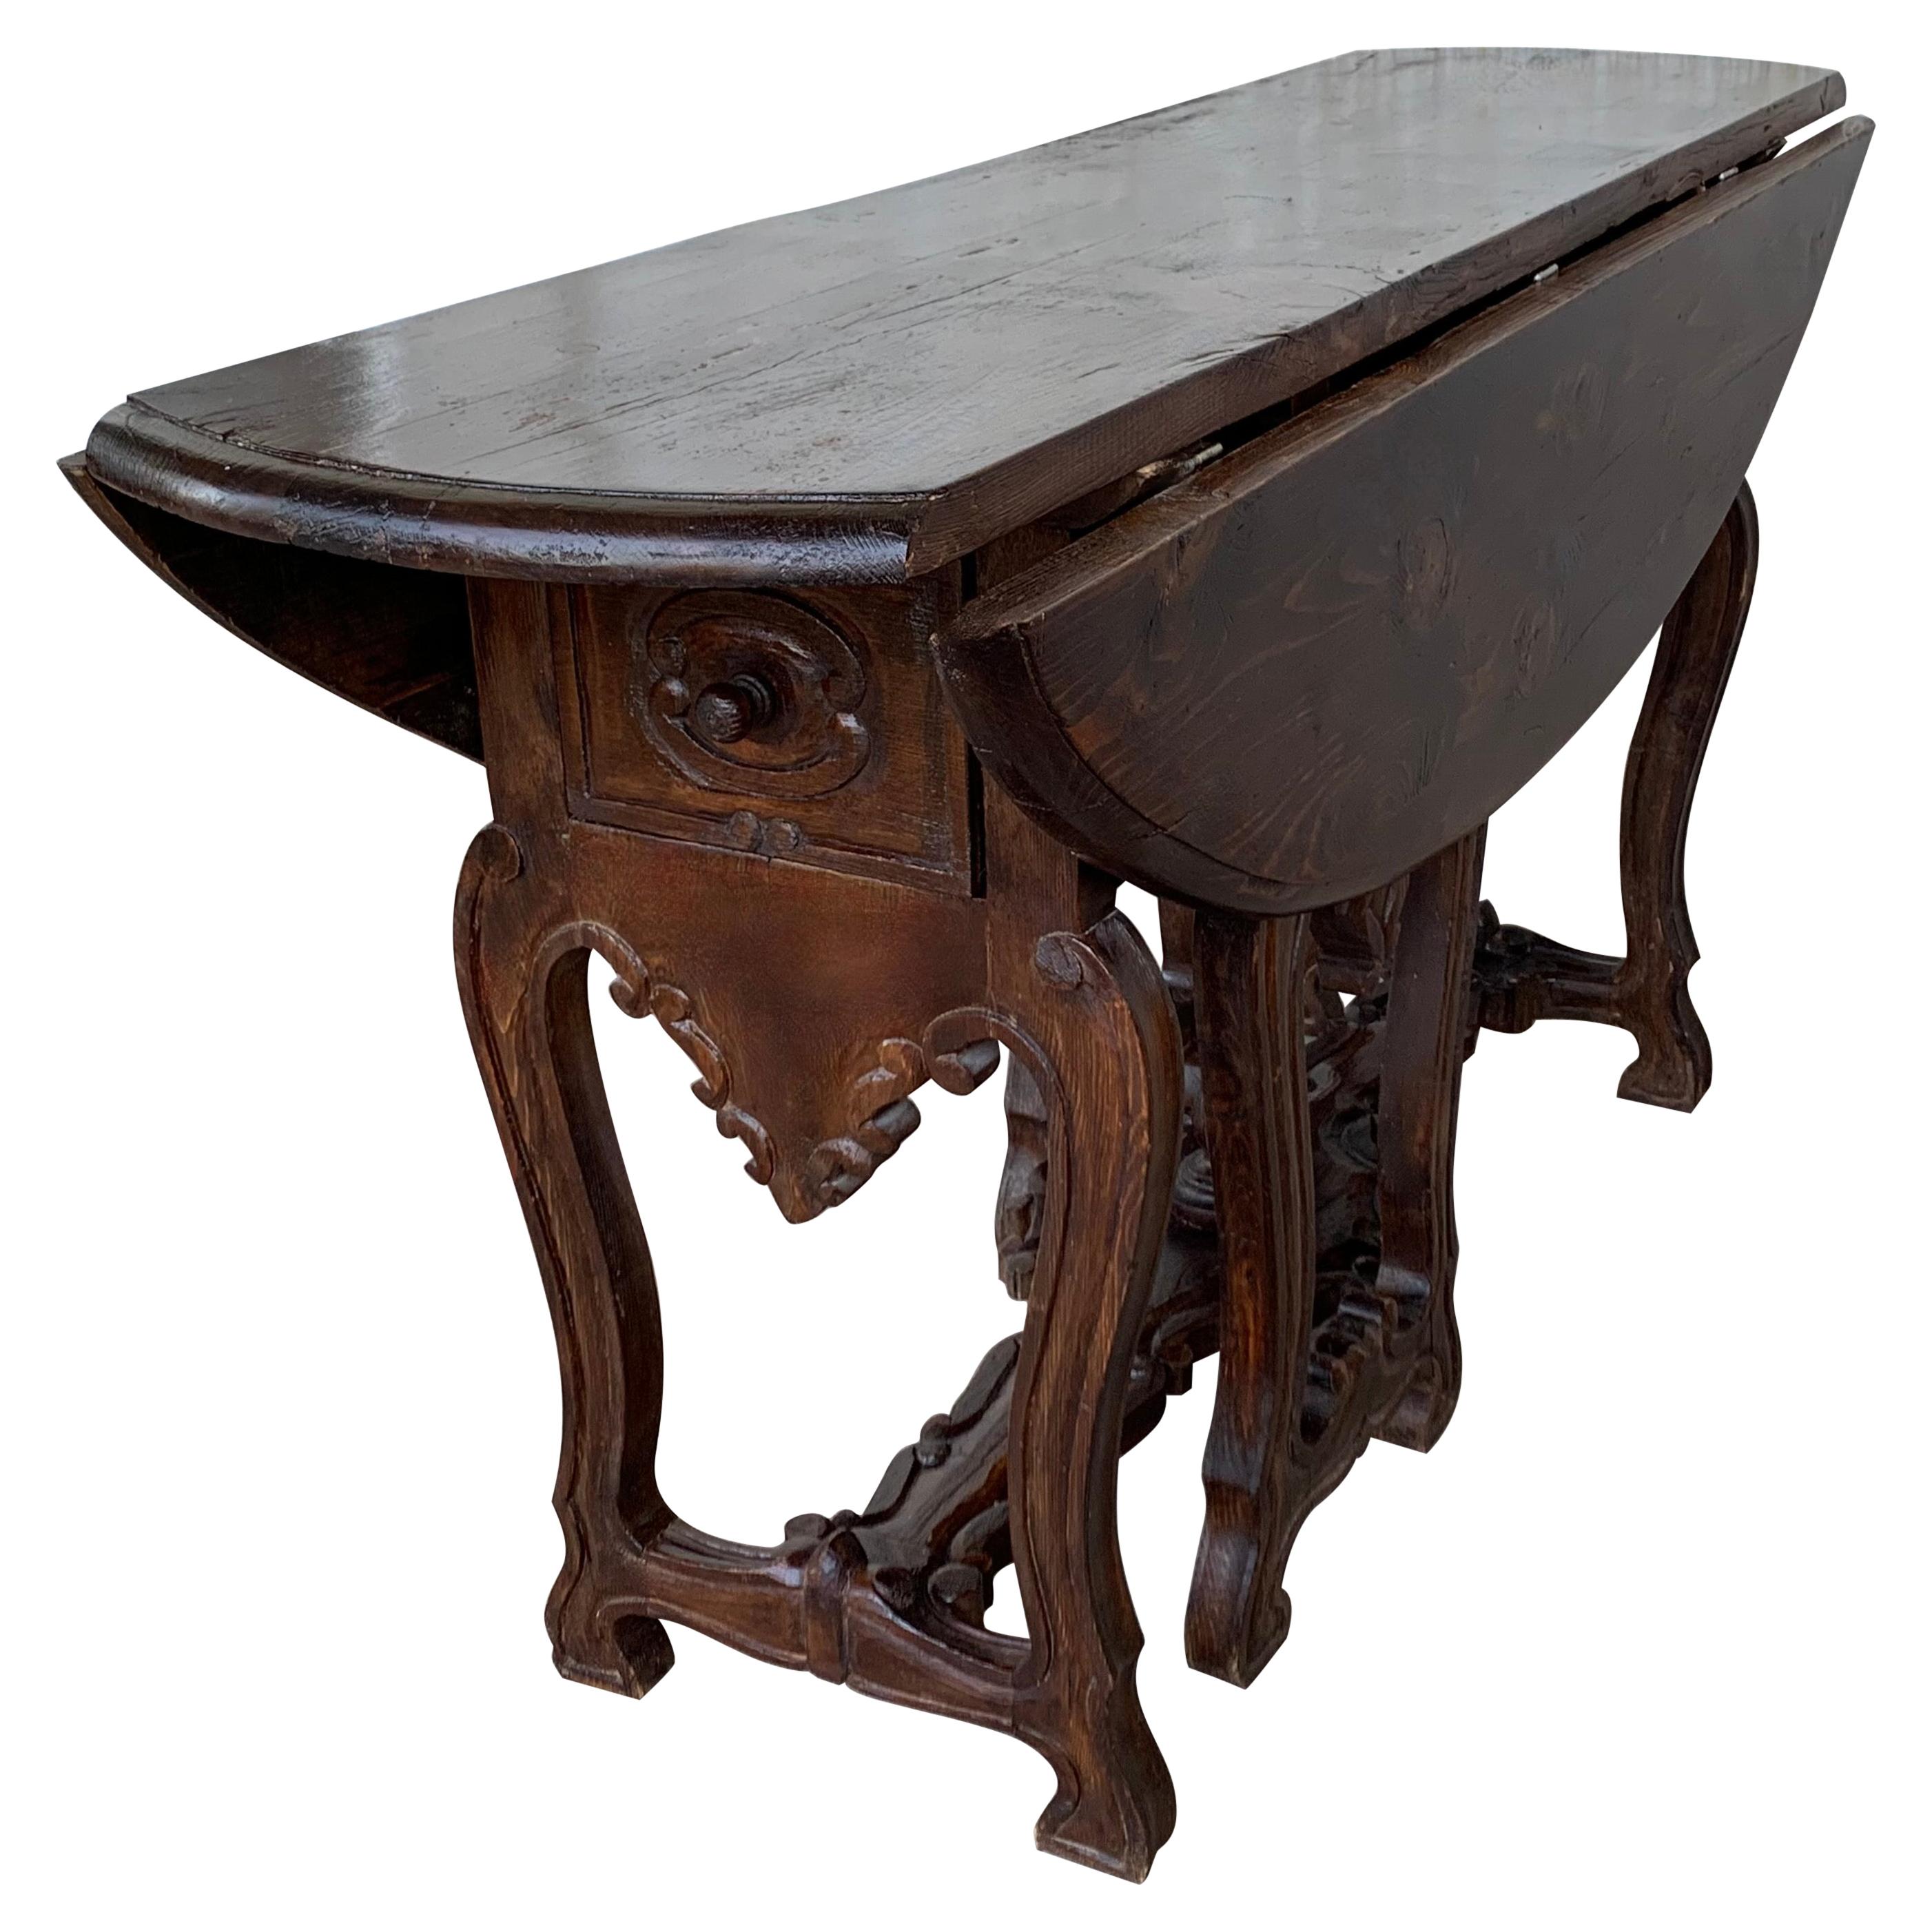 Ovaler Tisch mit Schubladen und Leierbeinen aus geschnitzter Eiche aus dem 18. Jahrhundert